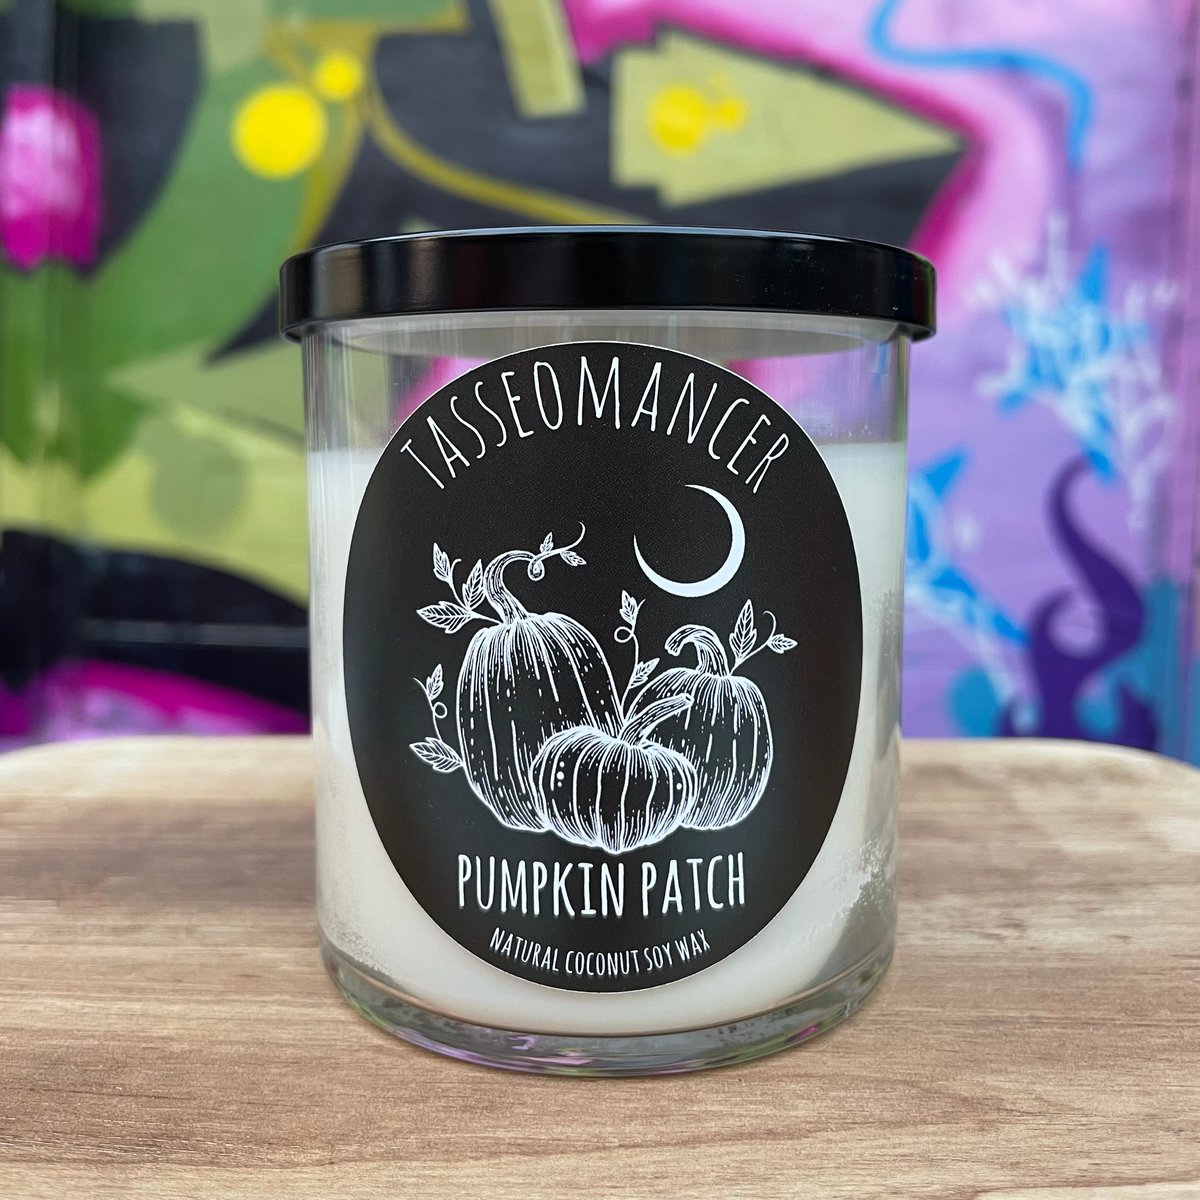 Pumpkin Patch Candle | Tasseomancer